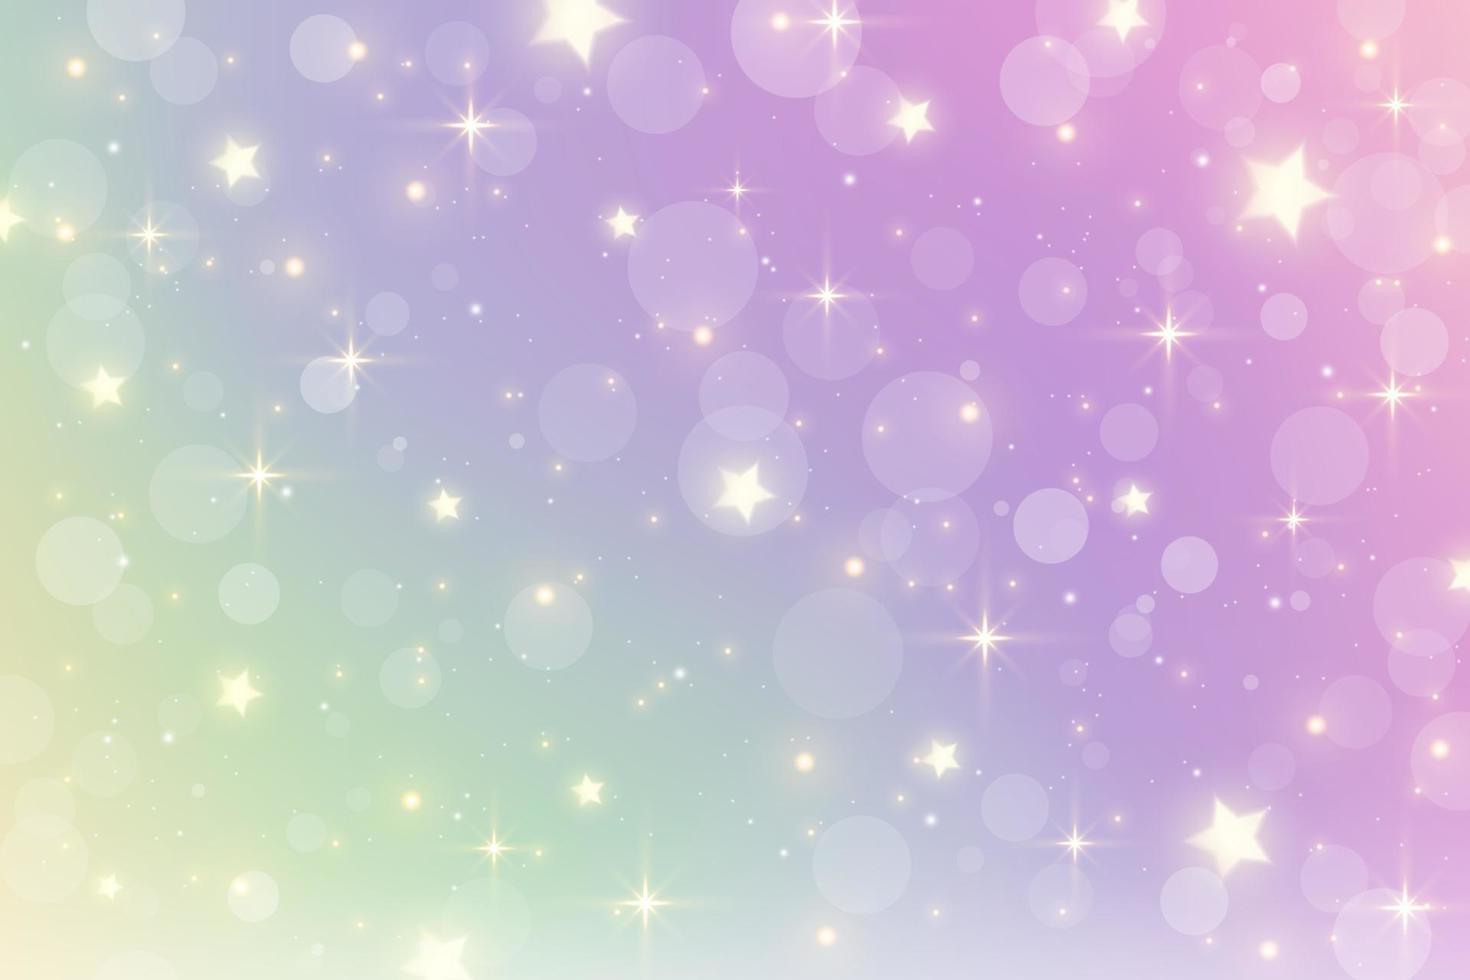 ilustración de acuarela de fantasía con cielo pastel de arco iris con estrellas. telón de fondo cósmico de unicornio abstracto. ilustración de vector de niña de dibujos animados.